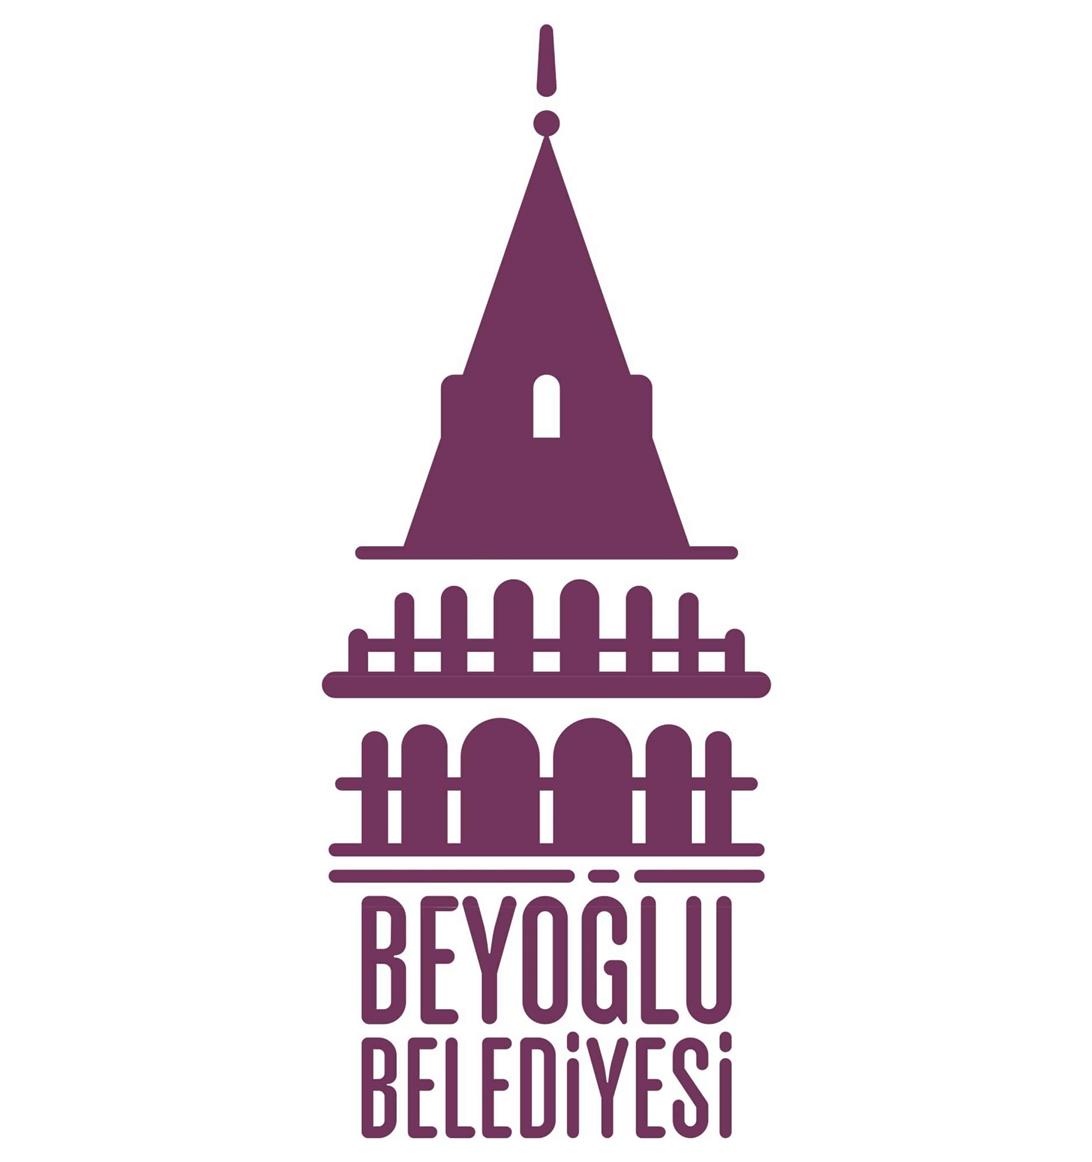 beyoglu belediyesi logo